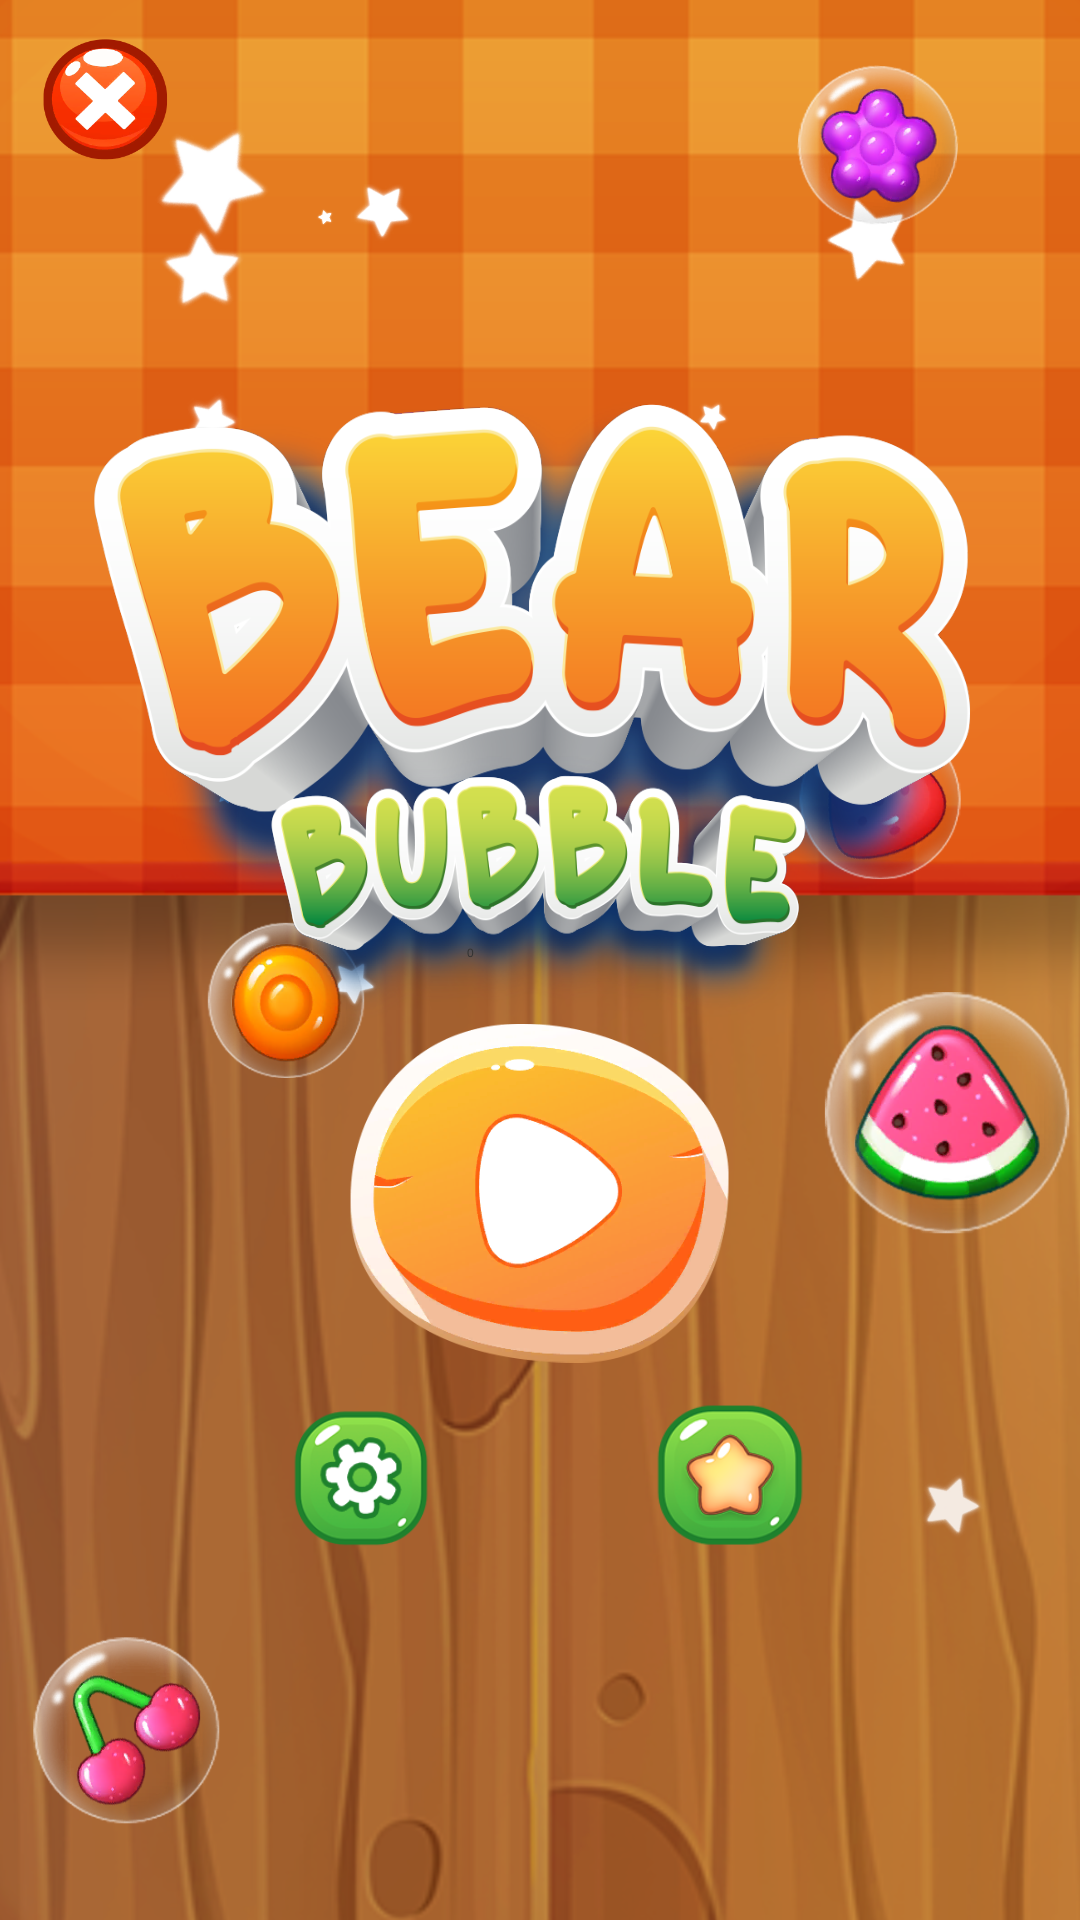 Bear Bubble